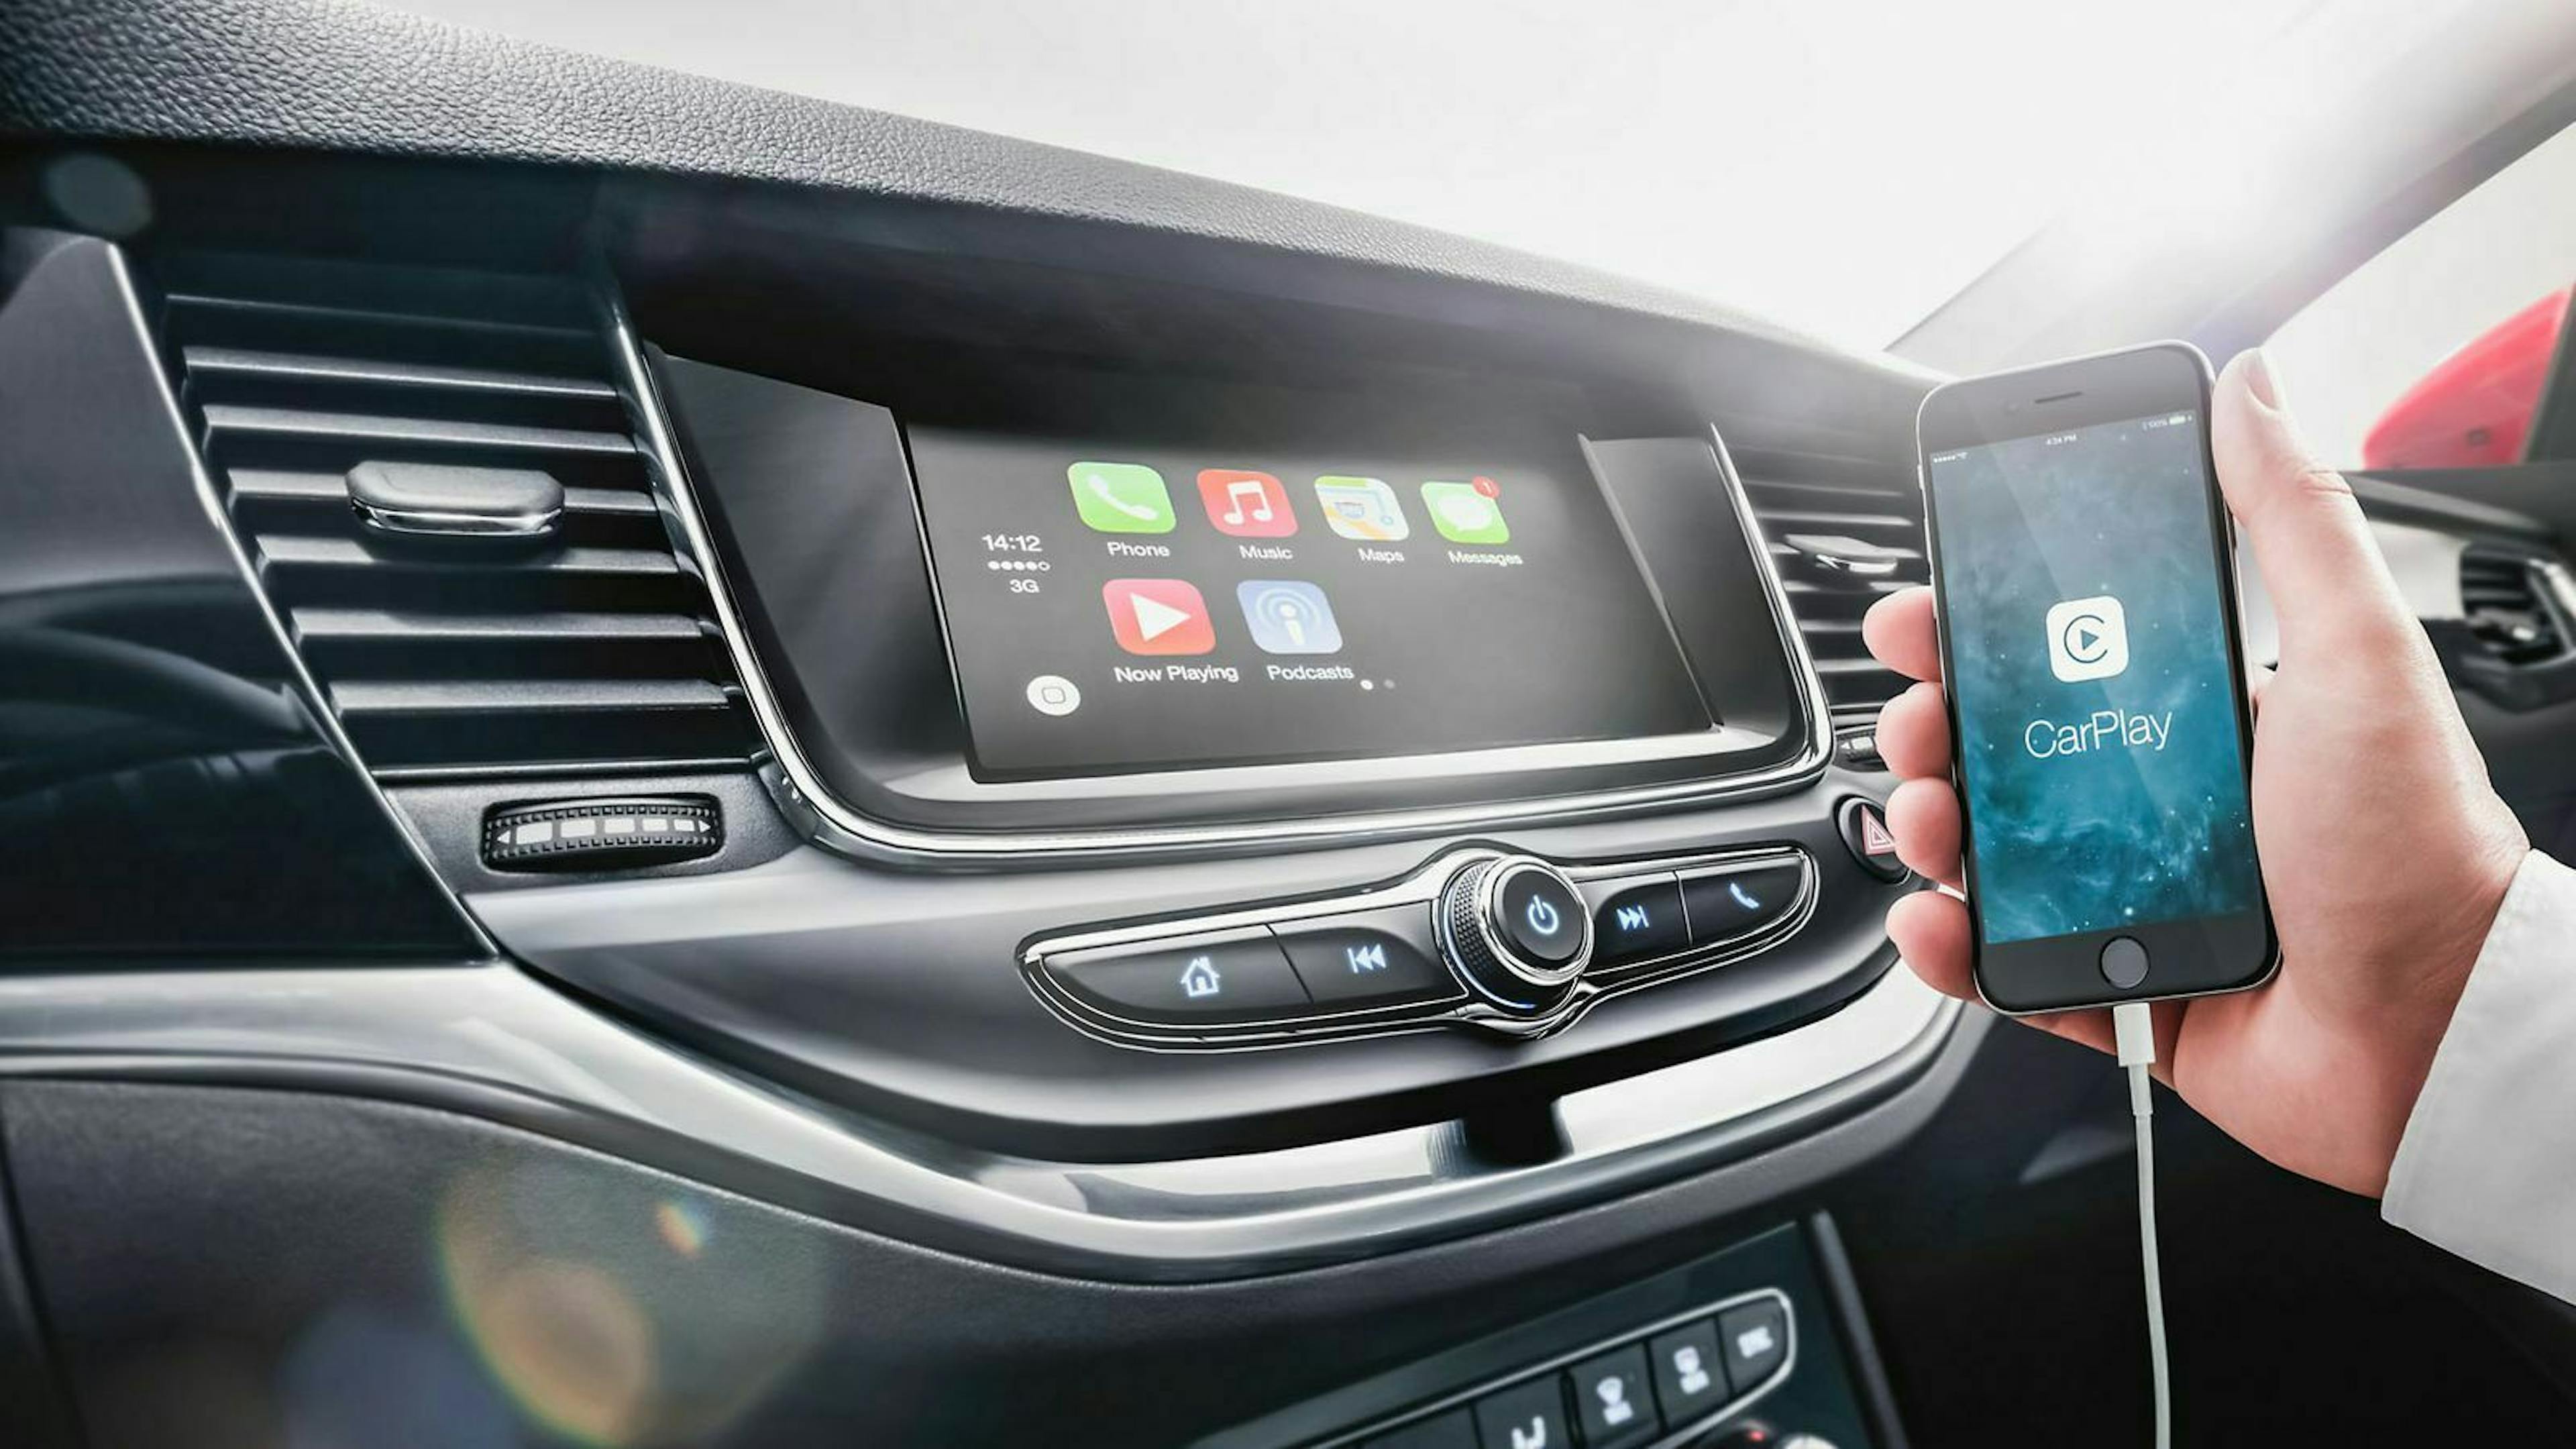 Zu sehen ist ein Infotainmentbildschirm eines Autos, welcher mit Apple CarPlay verbunden ist